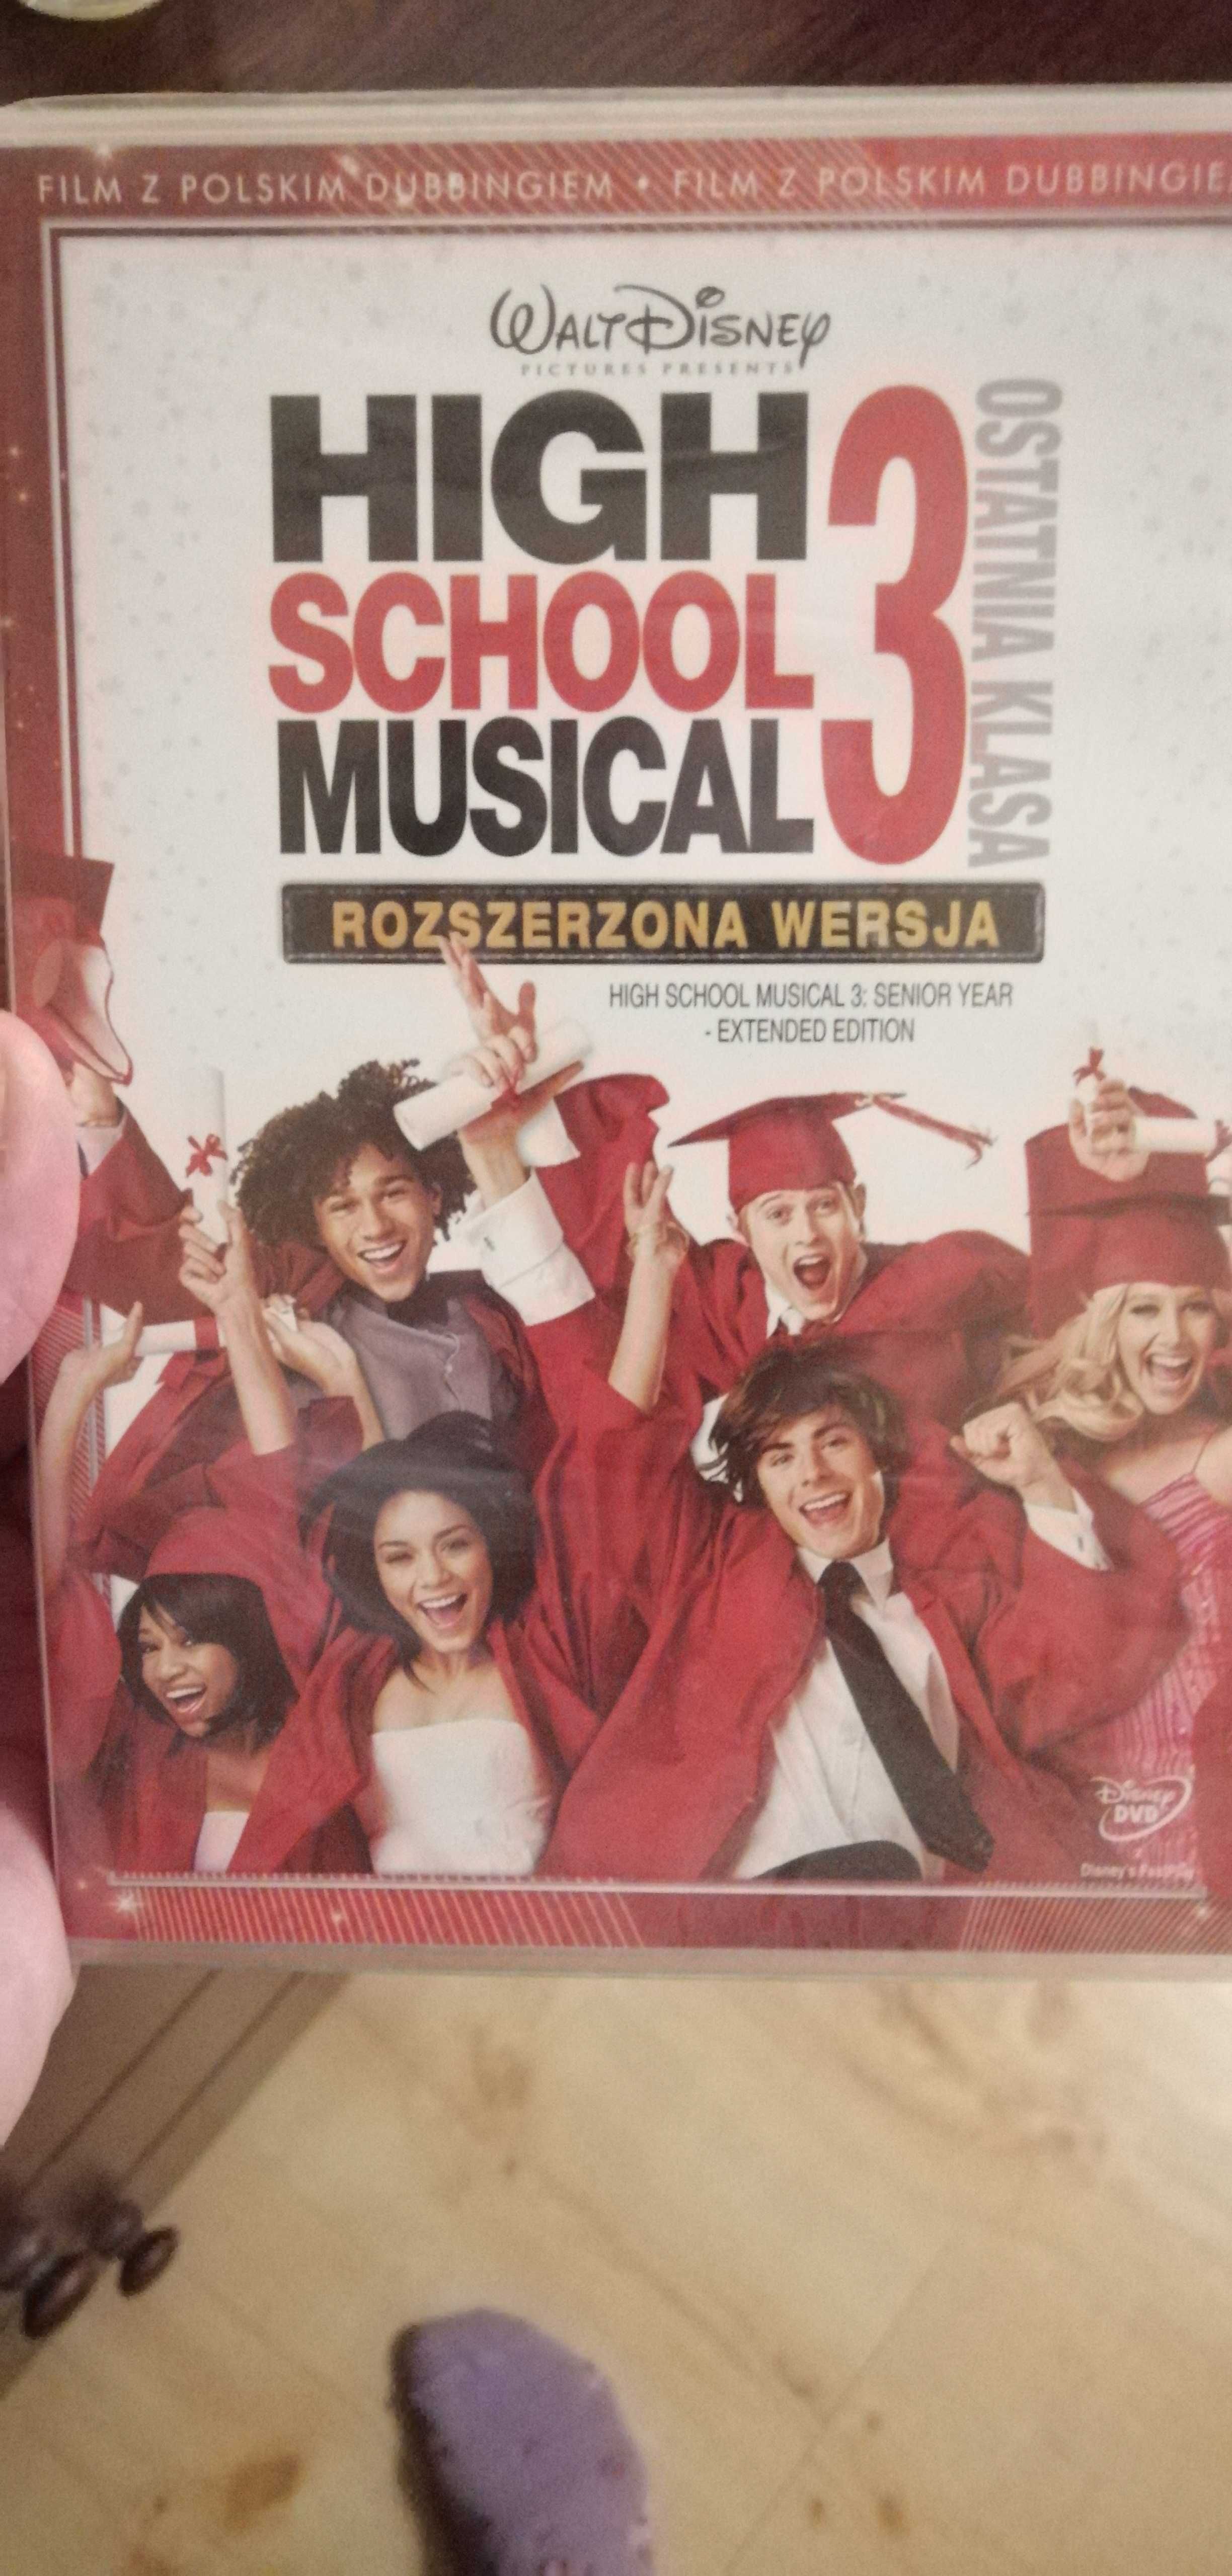 High School Musical 3- Ostatnia klasa wersja rozszerzona. NOWA. Folia.